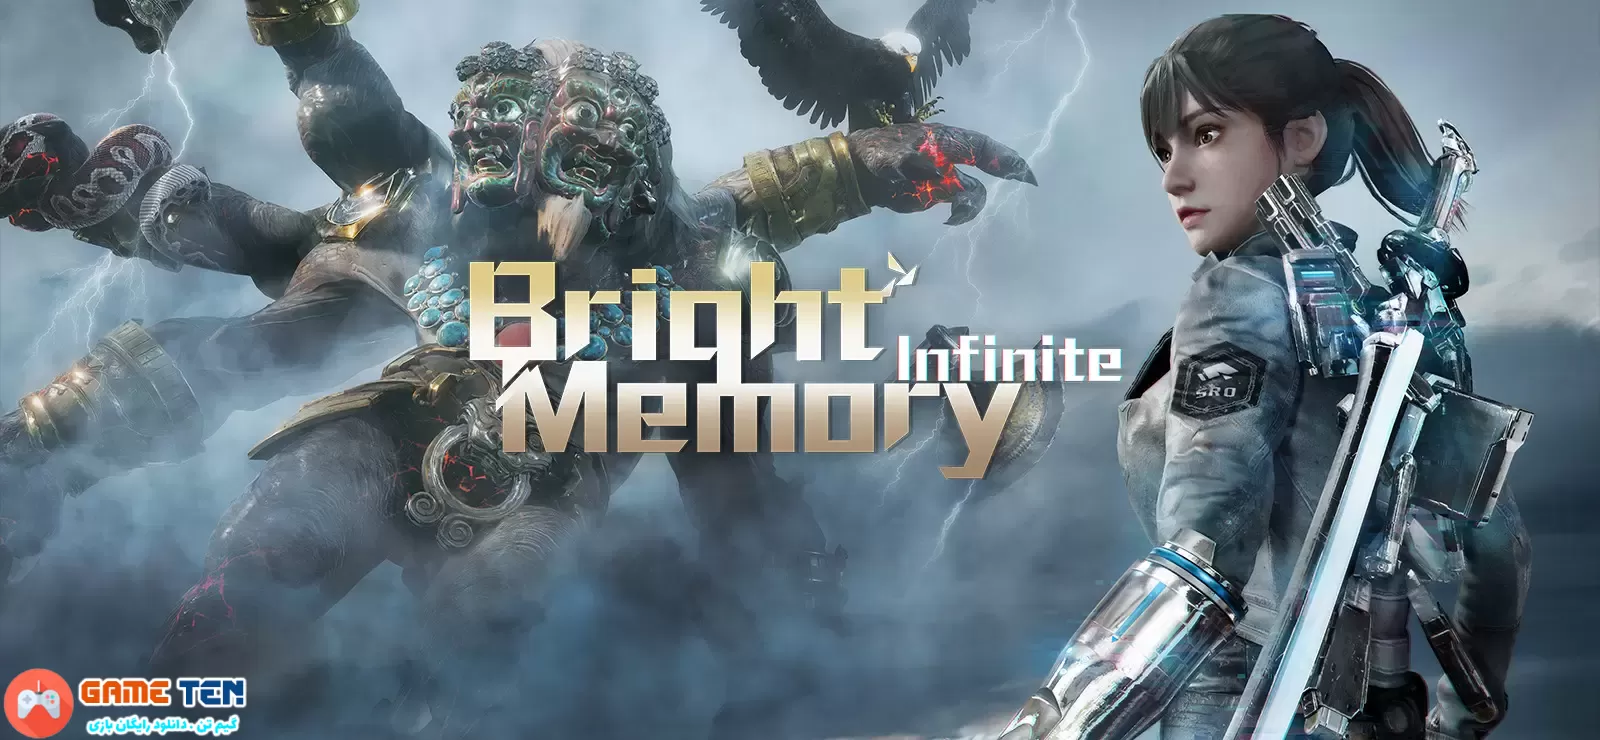 دانلود بازی Bright Memory Infinite – Ultimate Edition حافظه روشن بینهایت برای کامپیوتر + نسخه فارسی